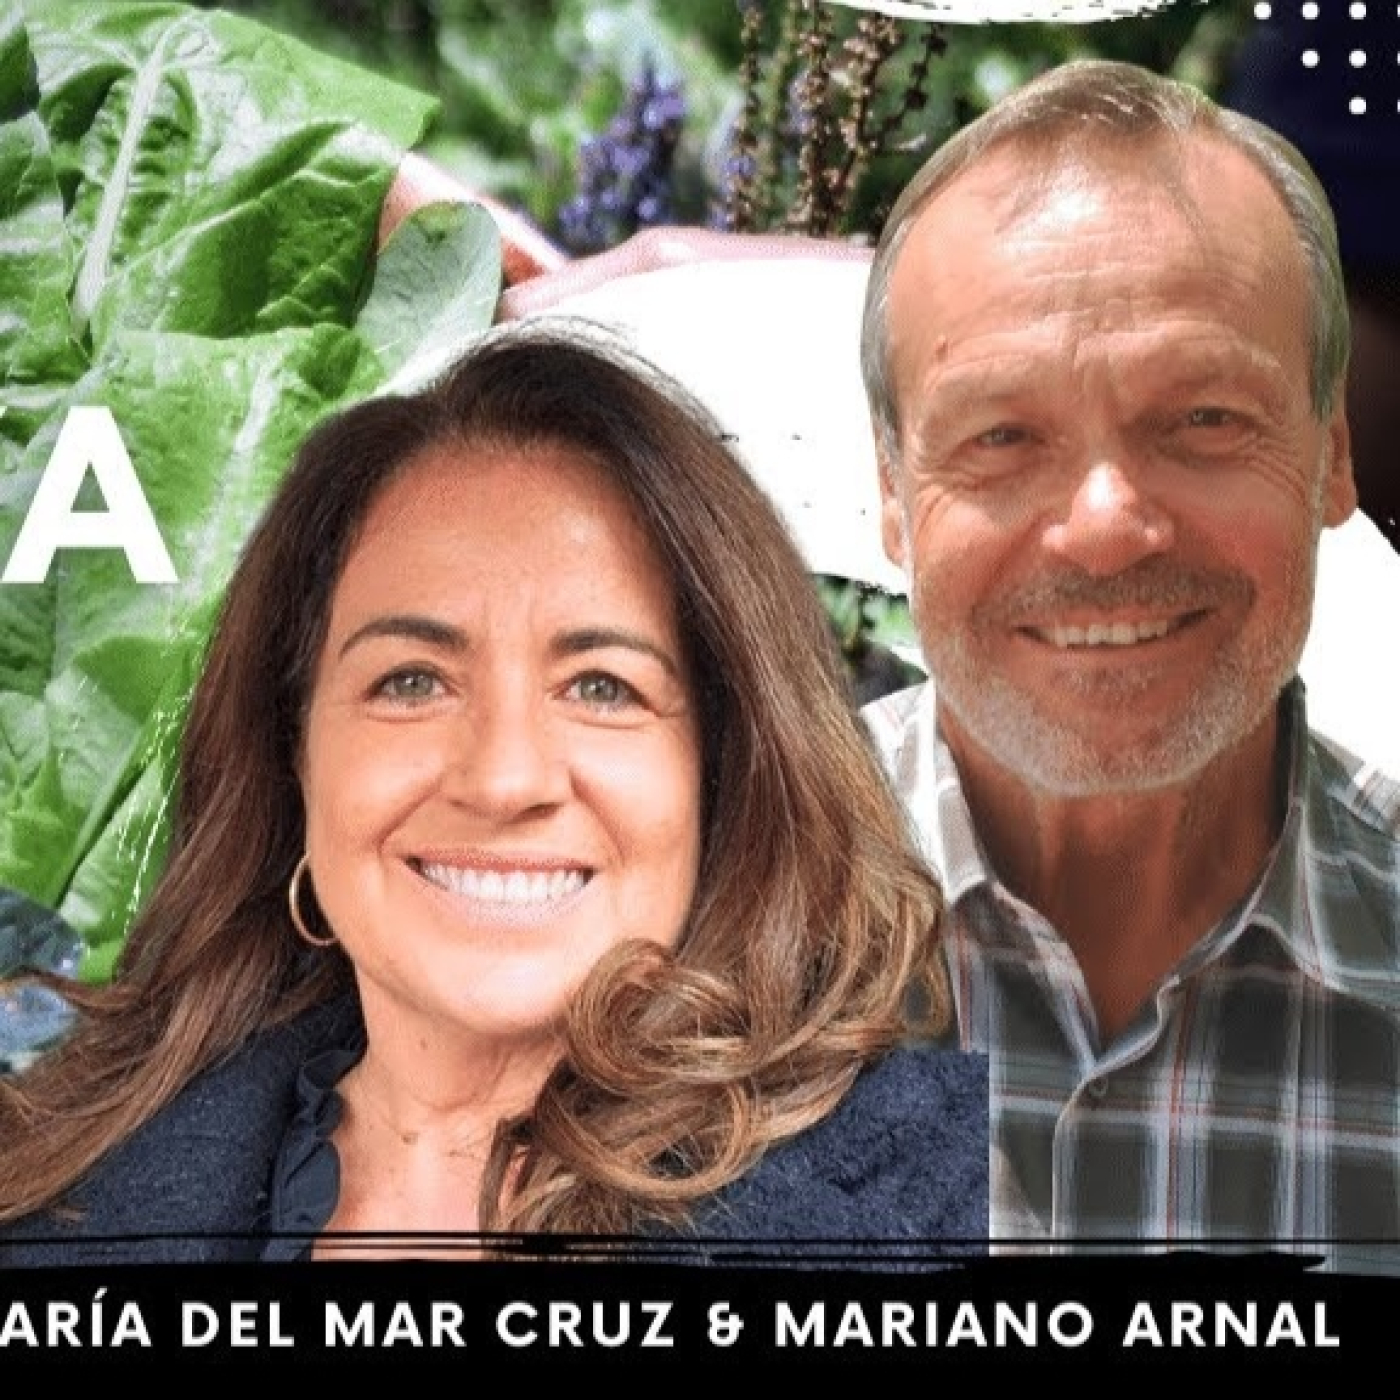 TU SALUD ES COSA TUYA con Mariano Arnal & María del Mar Cruz - Fundación Aqua Maris